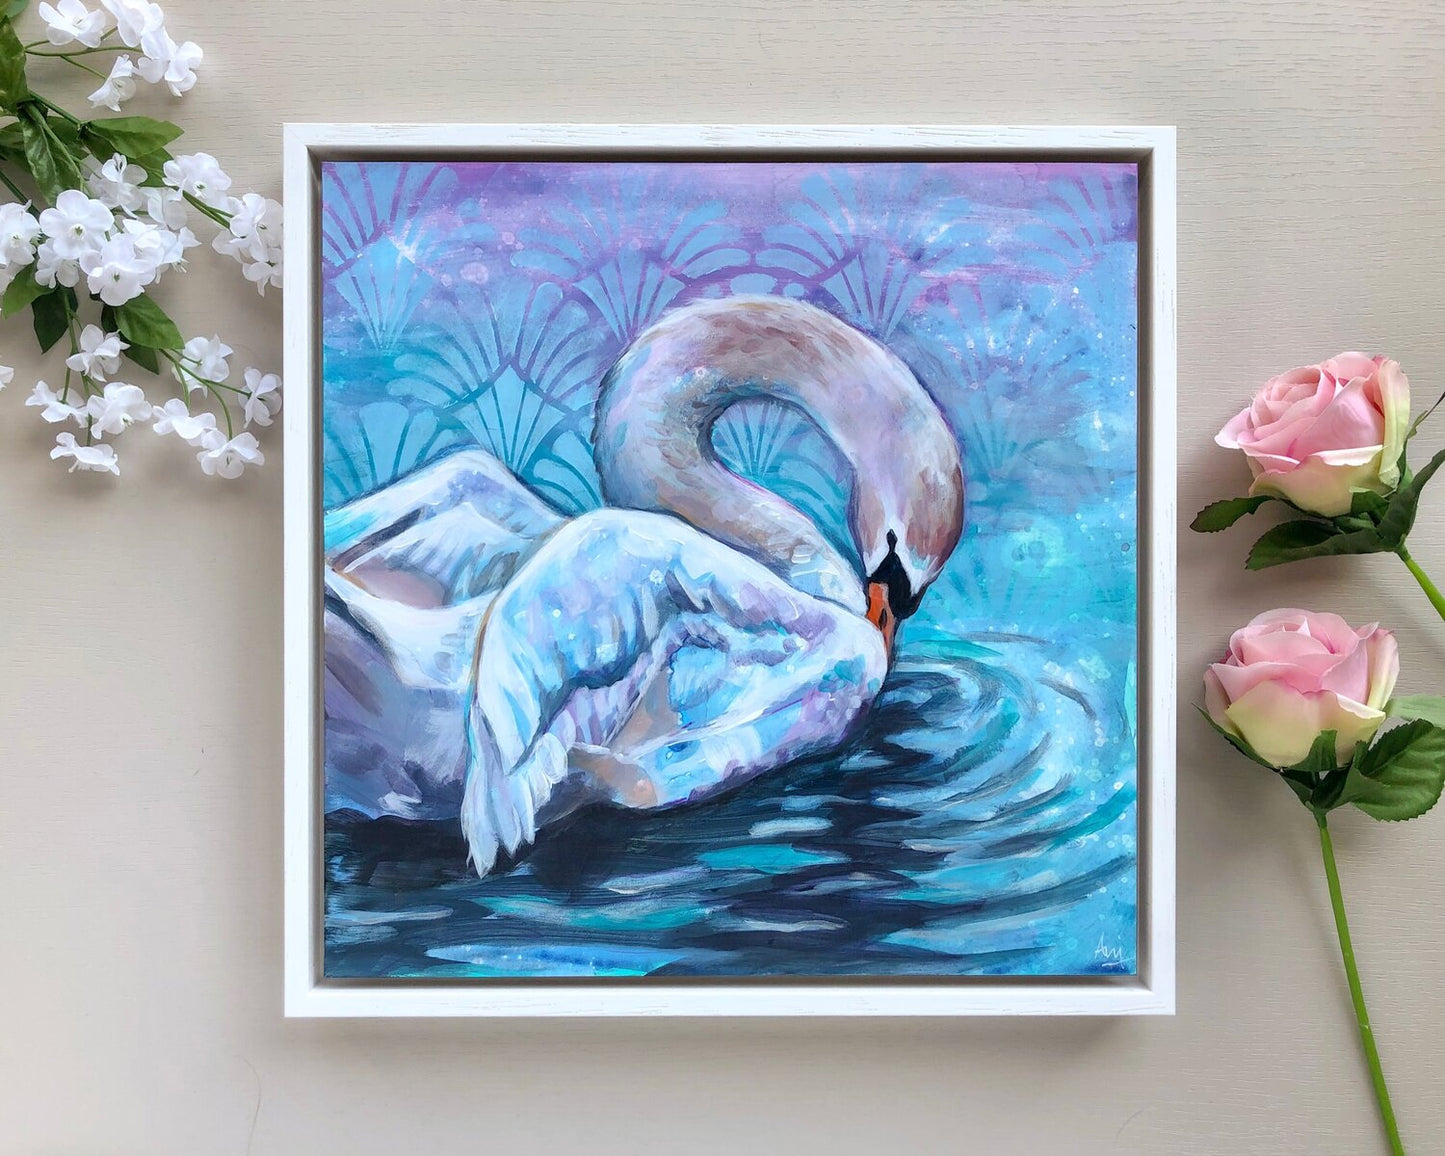 Aengus - Framed Original Swan Painting